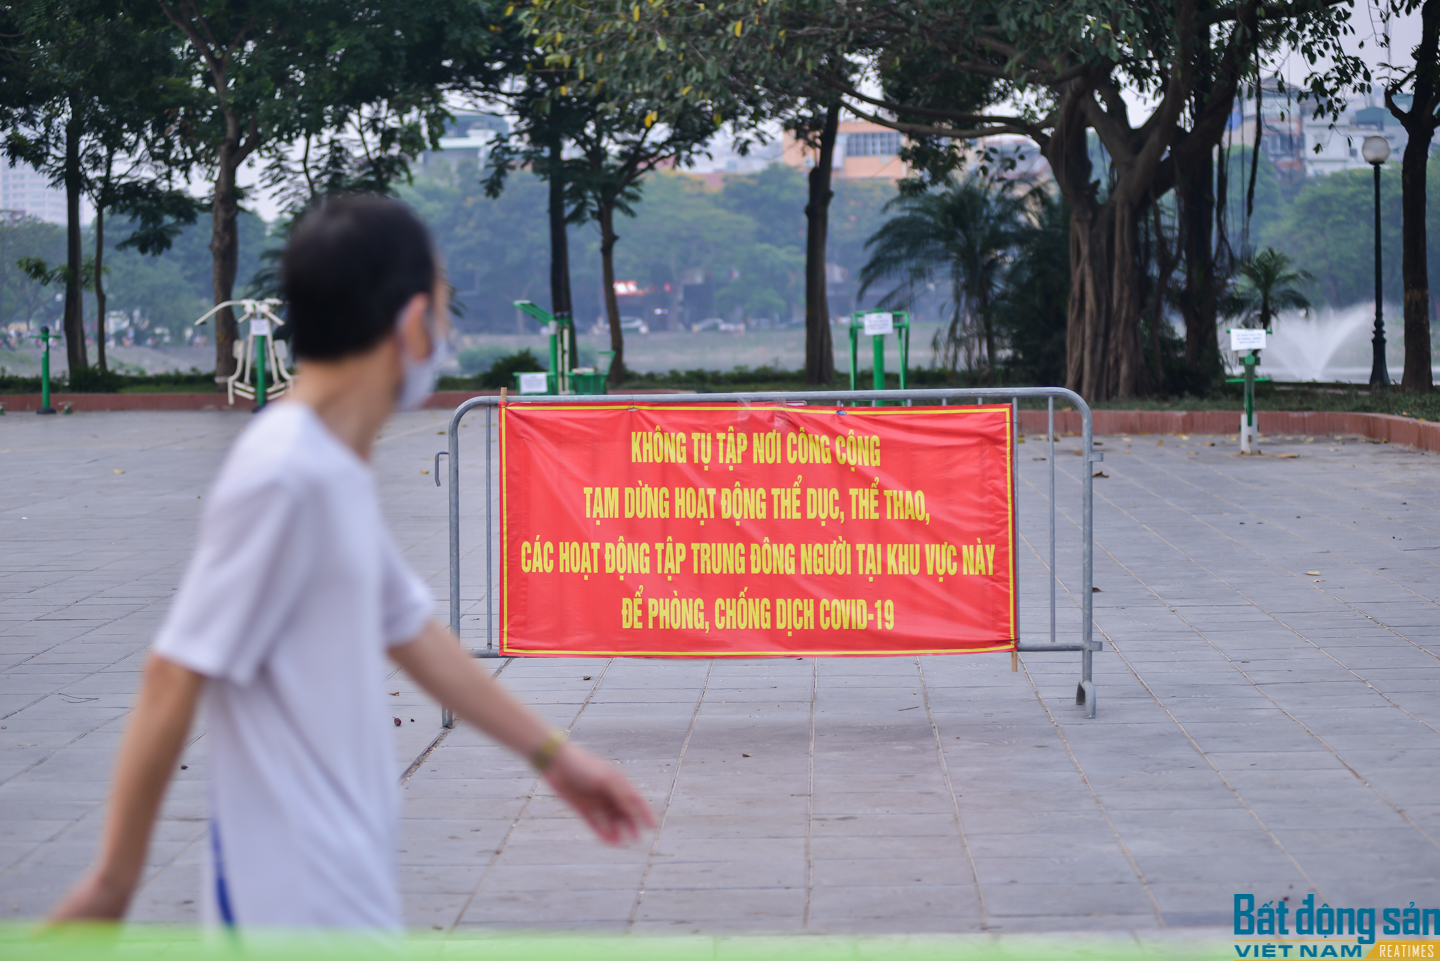 Người dân Hà Nội tập thể dục tại công viên bất chấp lệnh cấm